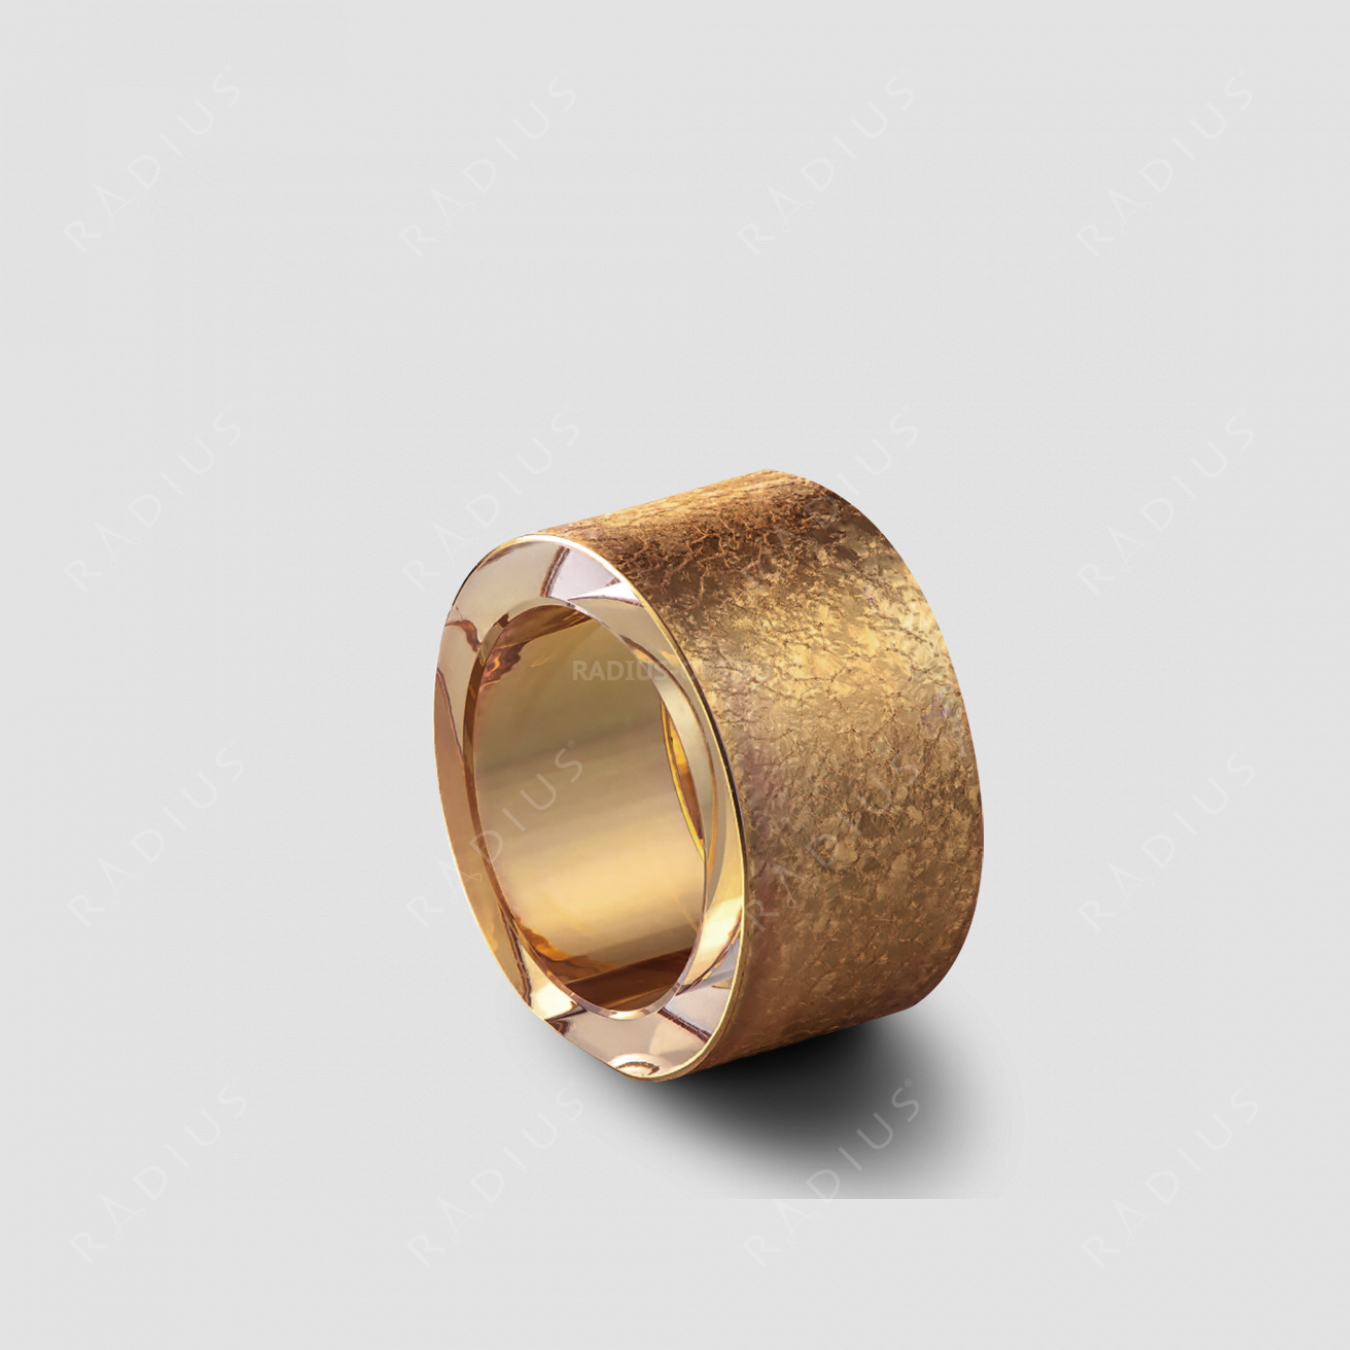 Кольцо для салфеток Rosegold, диаметр: 5 см, материал: бессвинцовый хрусталь, цвет: розовое золото, серия Gold Rush, EISCH, Германия